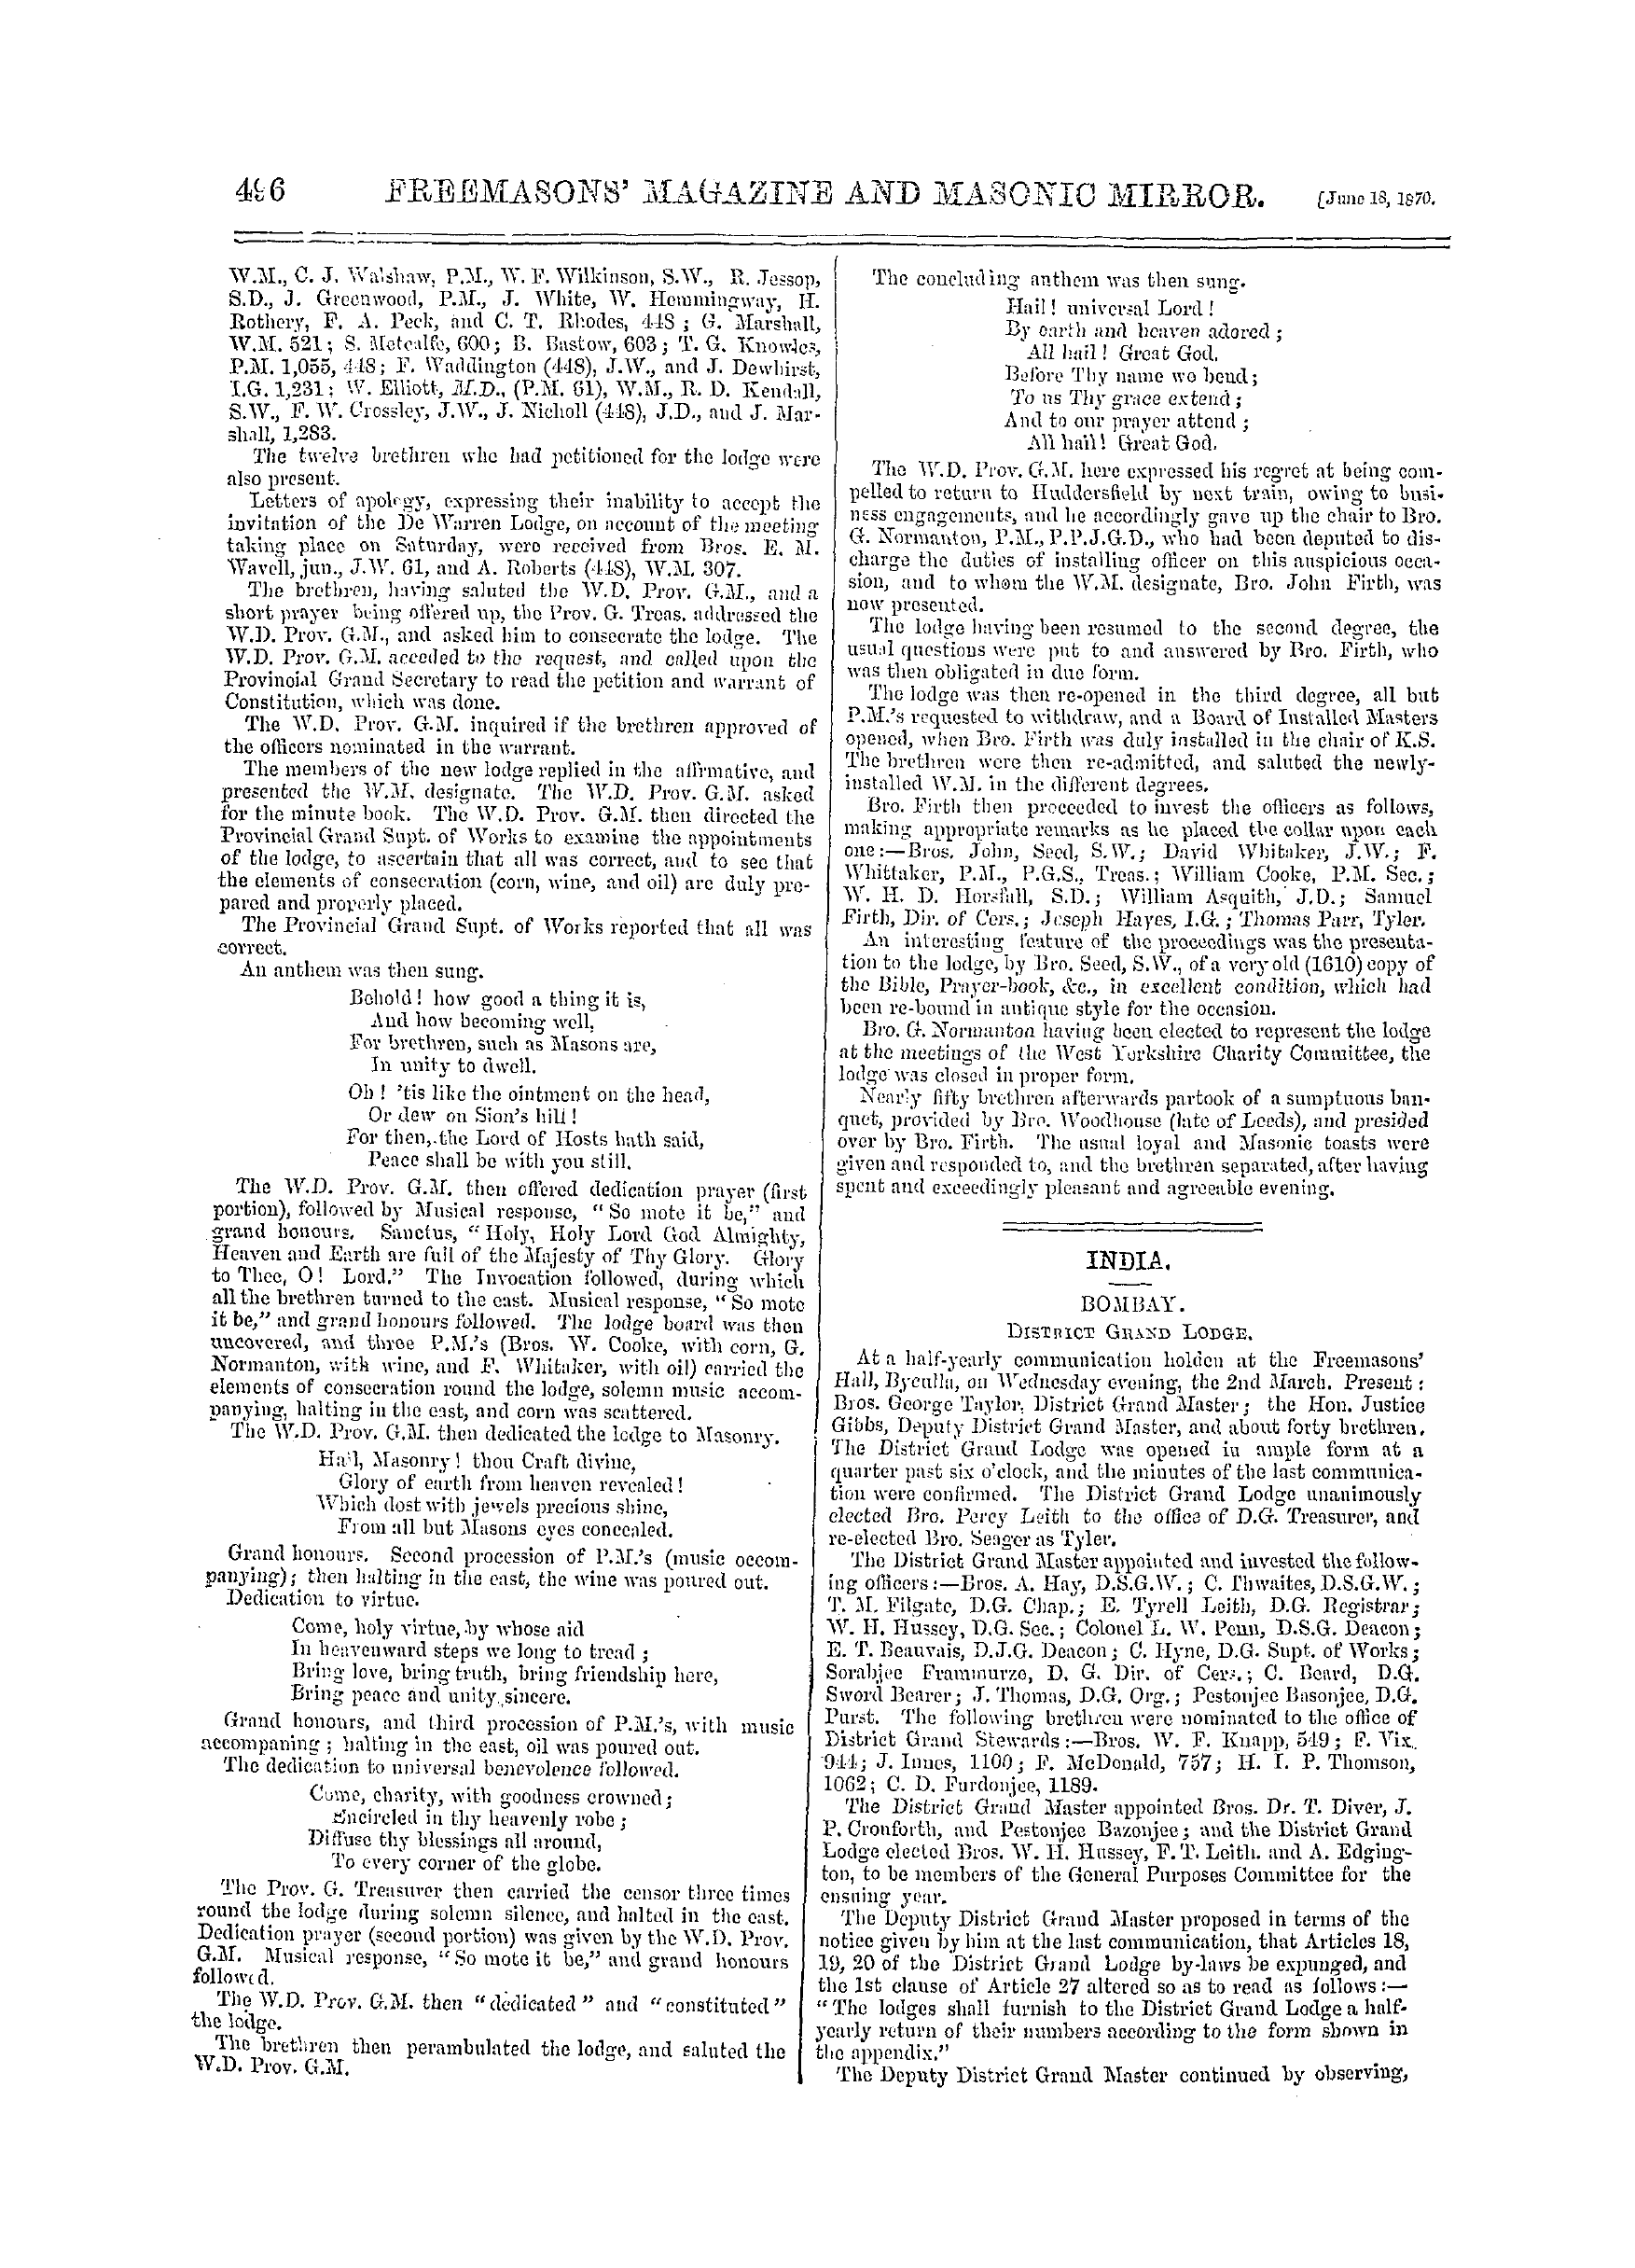 The Freemasons' Monthly Magazine: 1870-06-18: 16